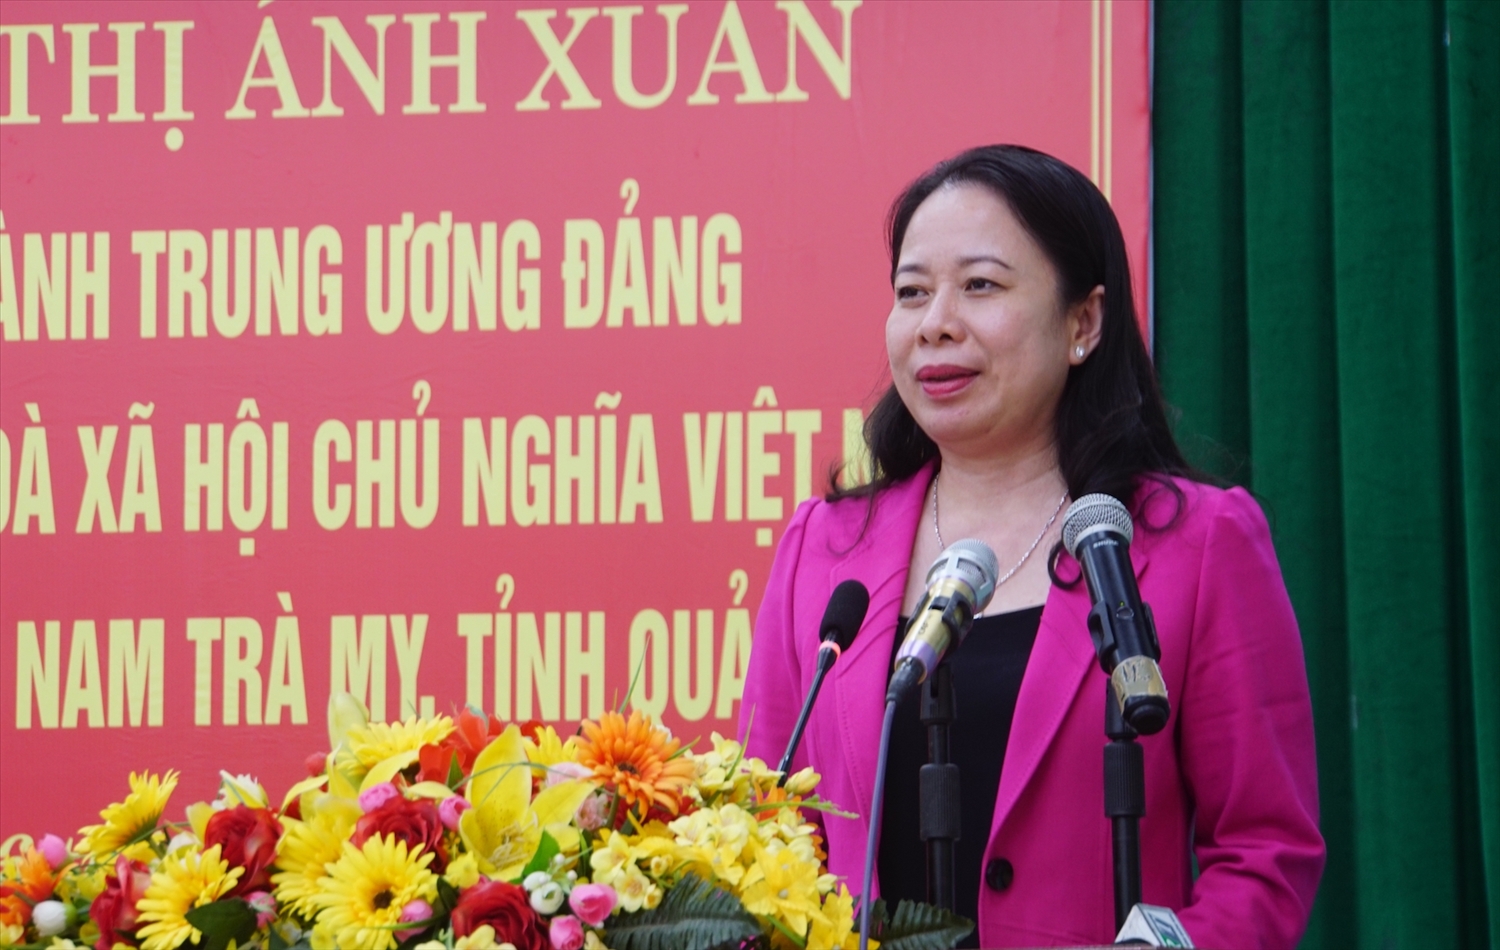 Phó Chủ tịch nước Võ Thị Ánh Xuân: Huyện Nam Trà My cần có những chính sách bài bản, nghiên cứu các sản phẩm đặc thù của tỉnh Quảng Nam, cũng như của huyện trở thành ngành hàng có giá trị gia tăng cao, có thương hiệu không chỉ ở trong nước, mà còn cạnh tranh với quốc tế 